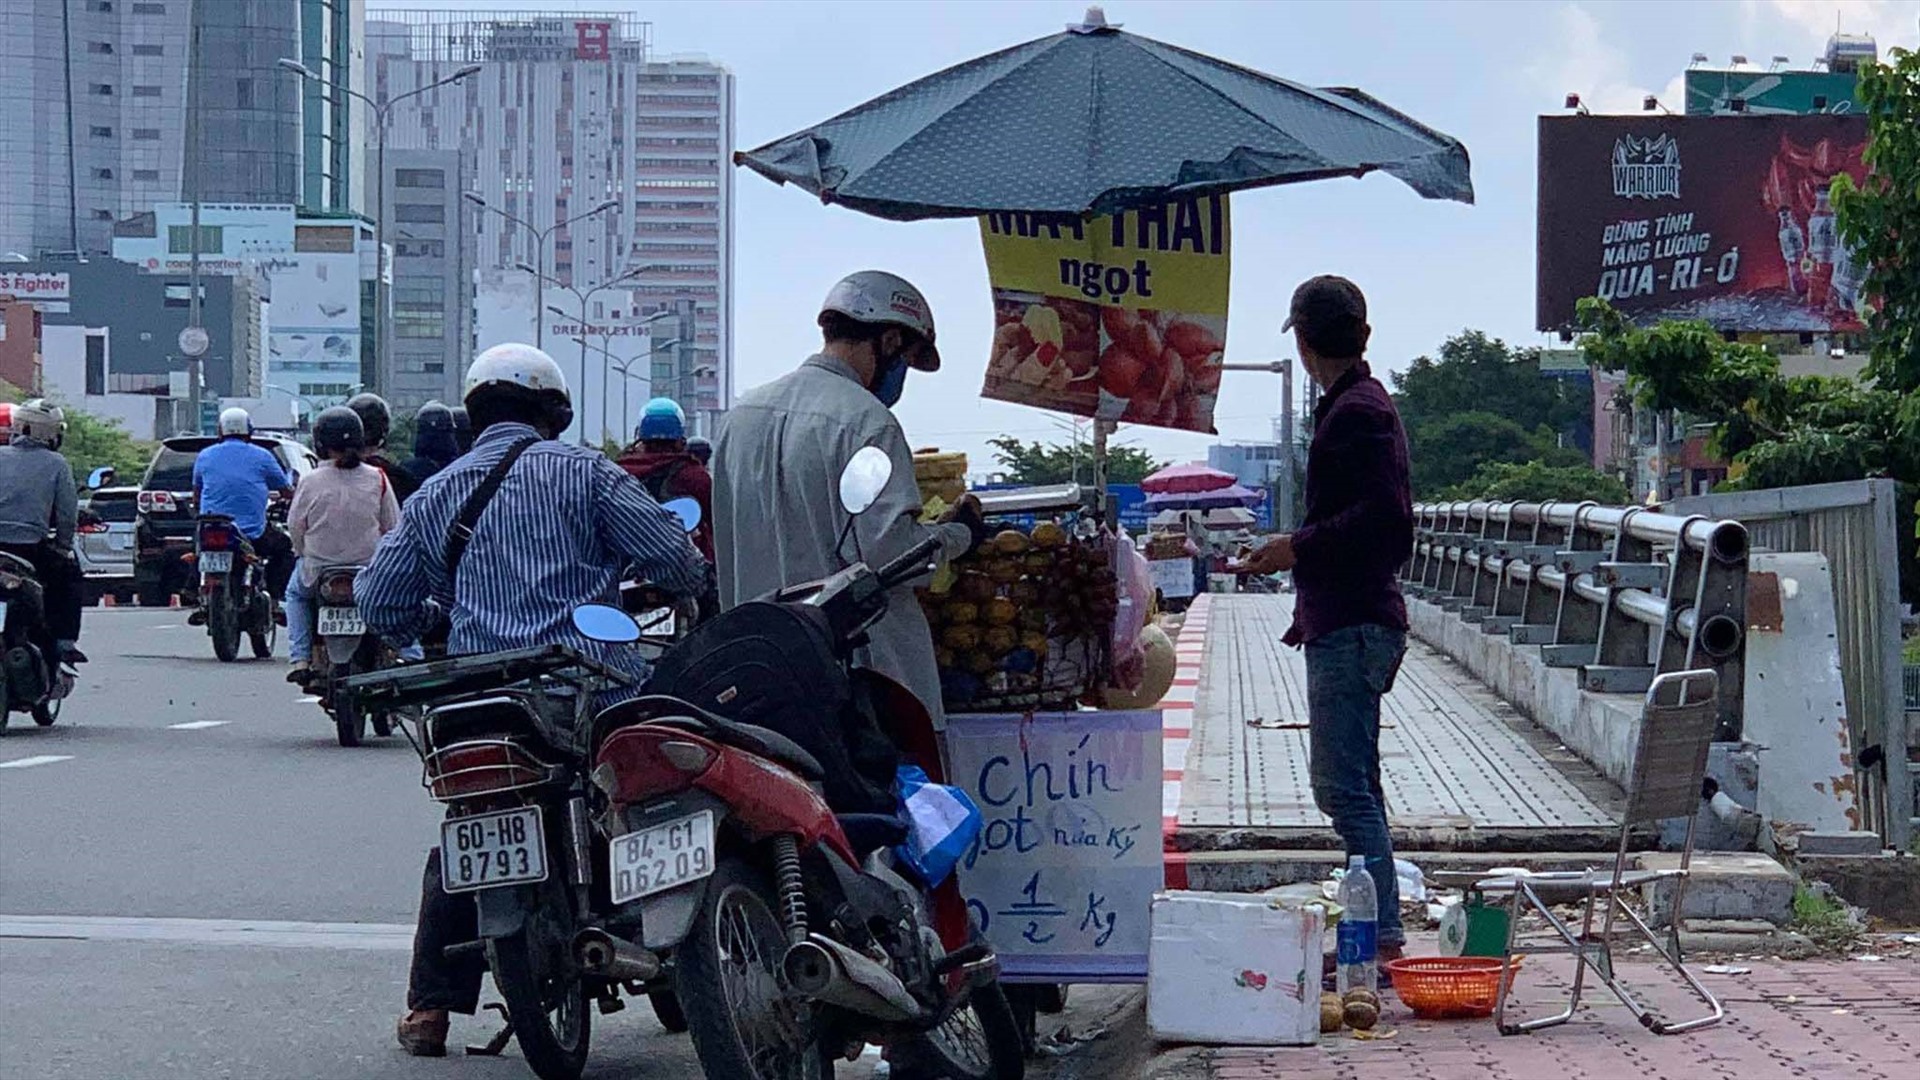 Trên tuyến đường Điện Biên Phủ, nhiều xe bán trái cóc được để mức giá 20.000 đồng/kg hấp dẫn người mua.